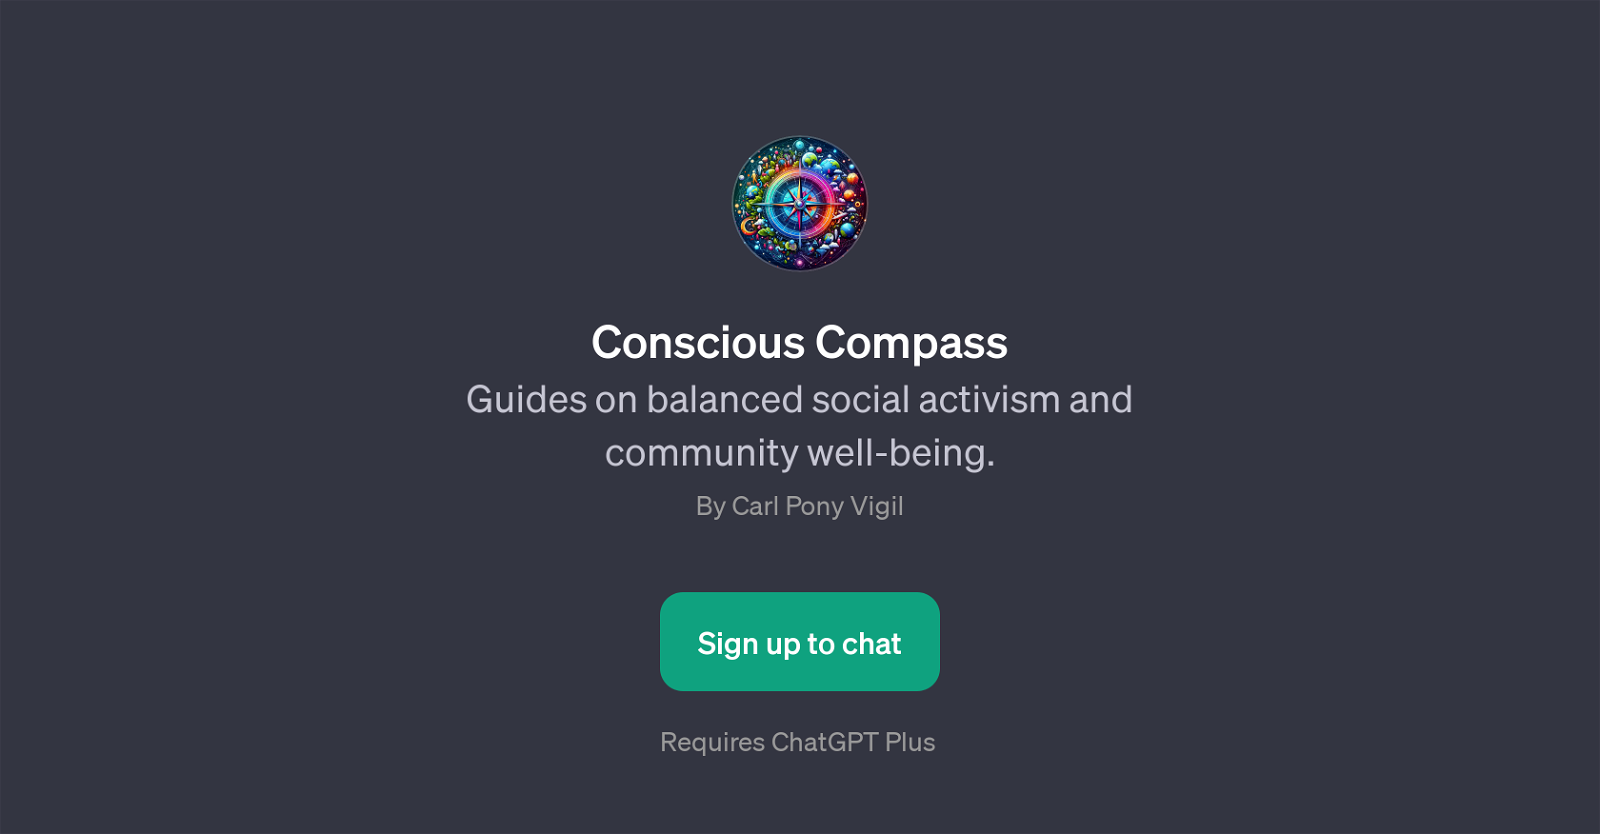 Conscious Compass website